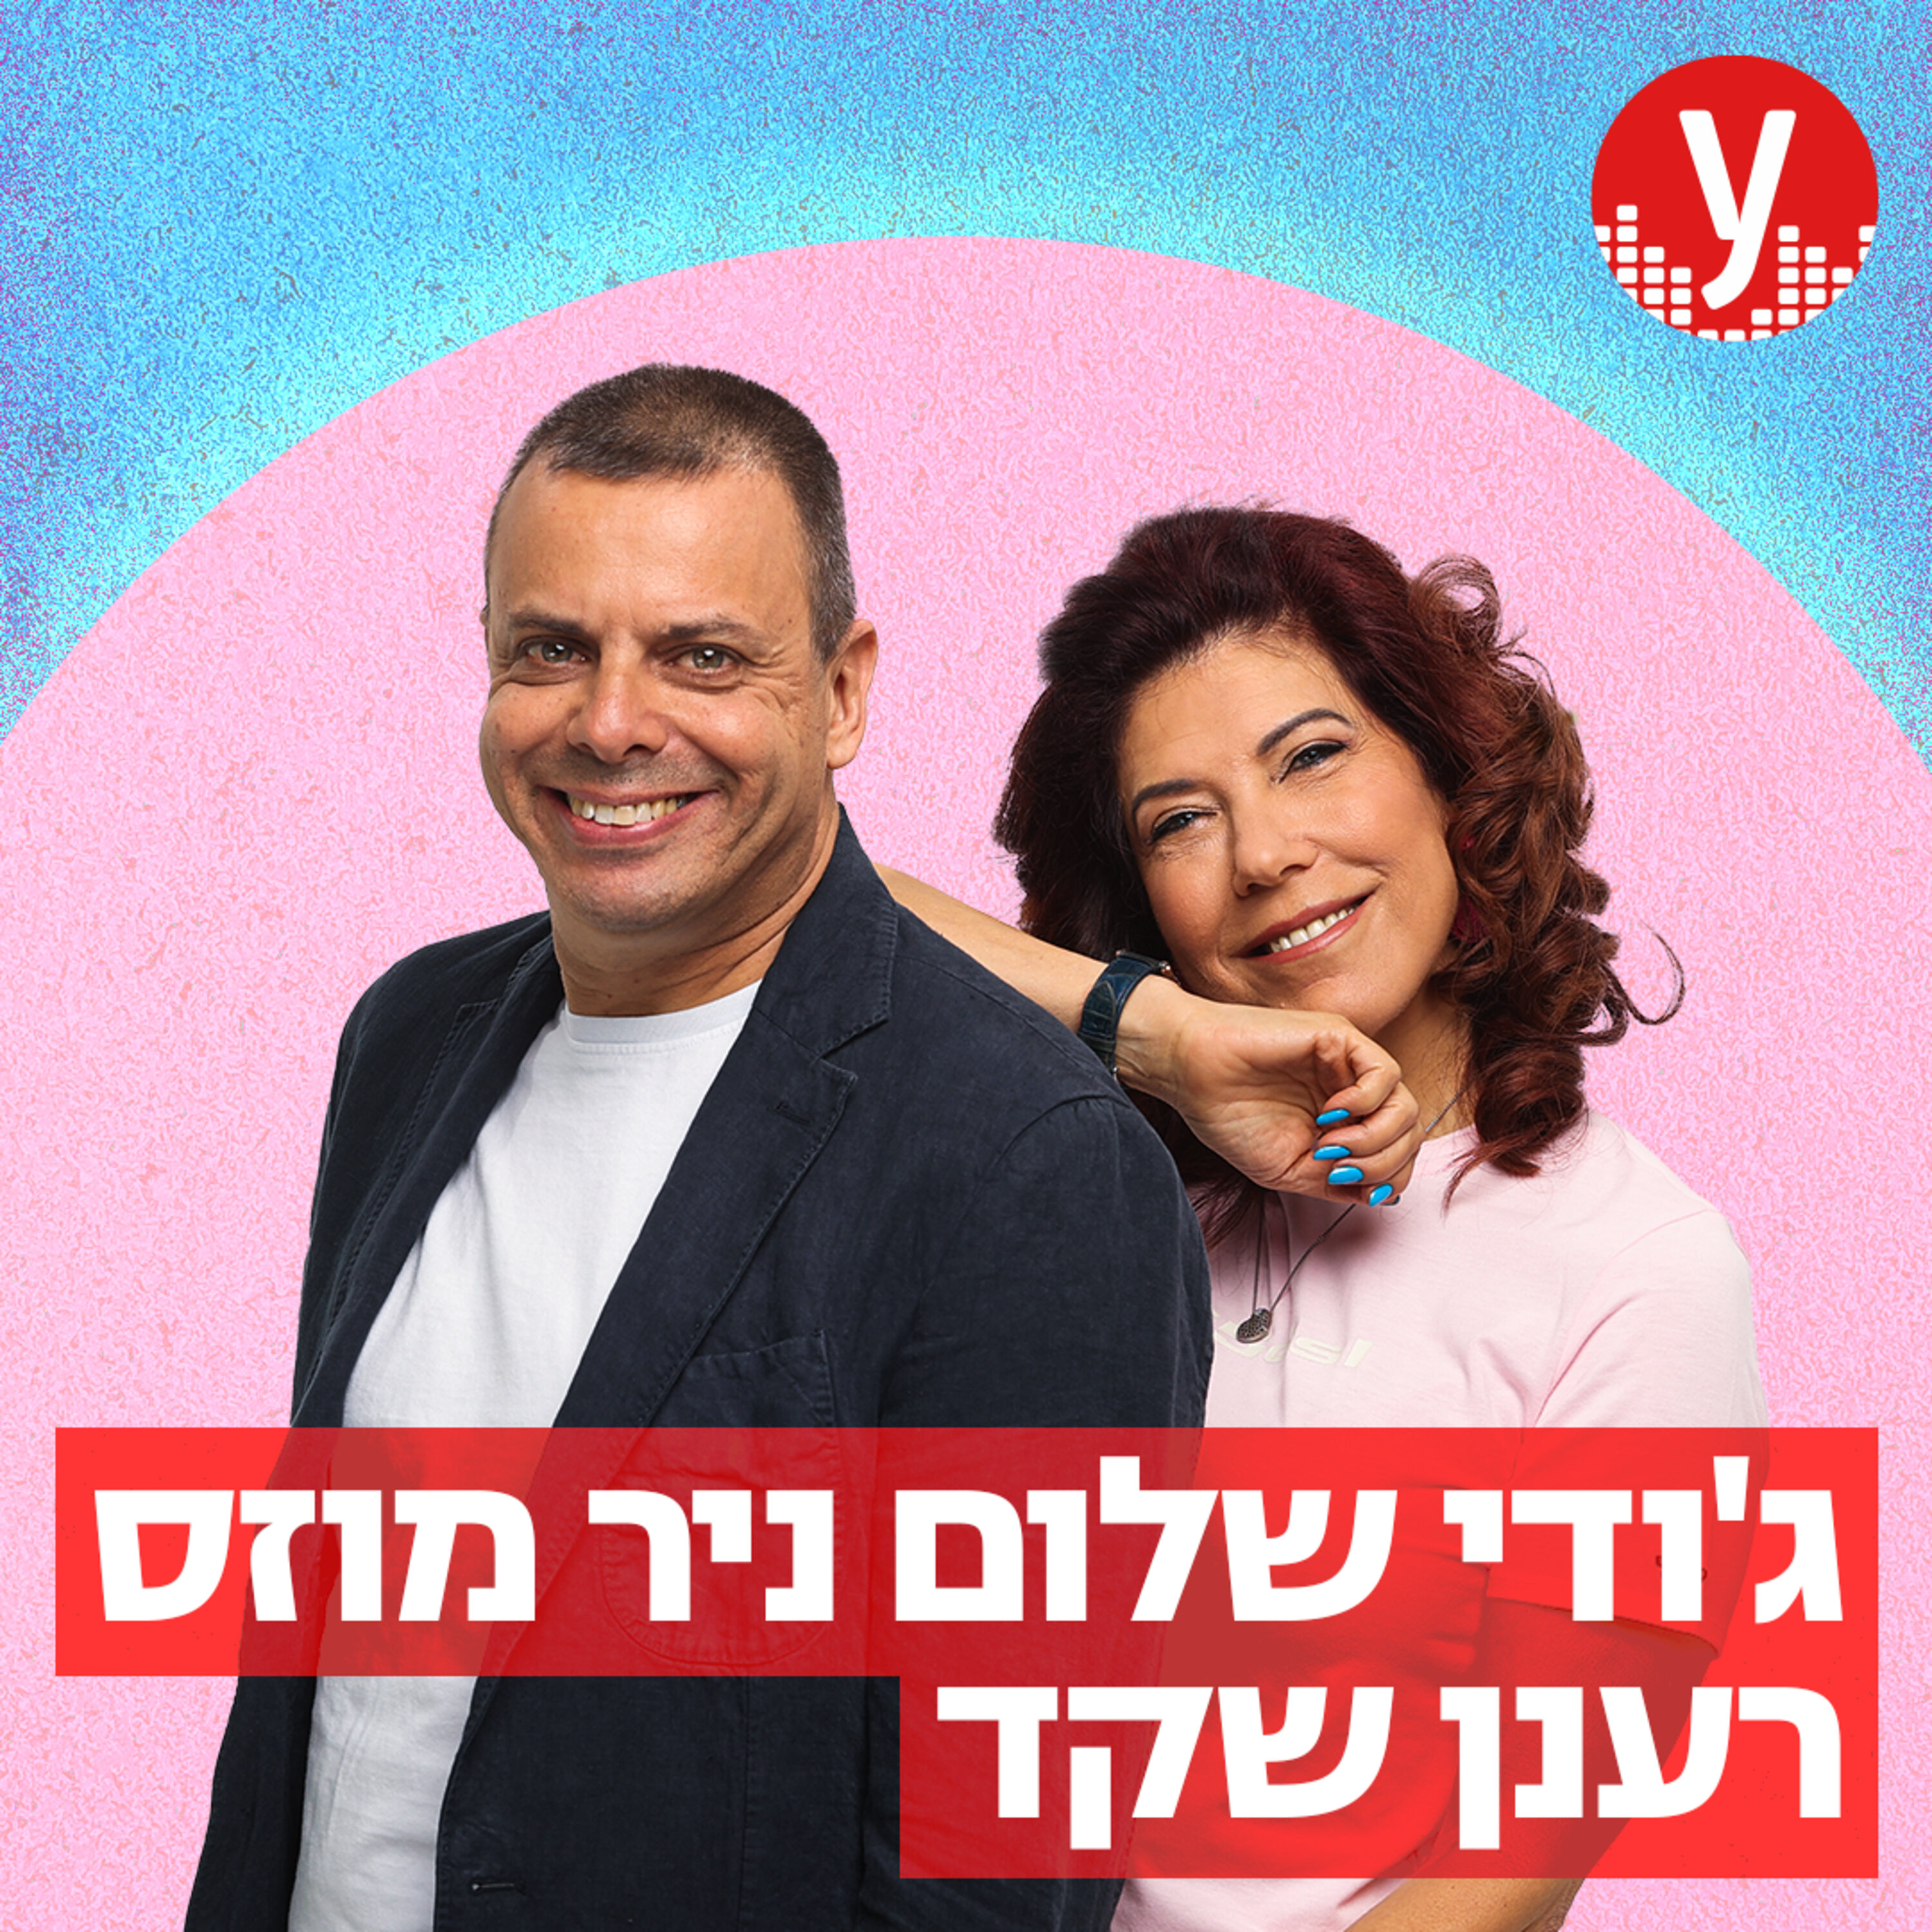 החילוני-פון: הקו החם לגילויי הדתה בתל אביב